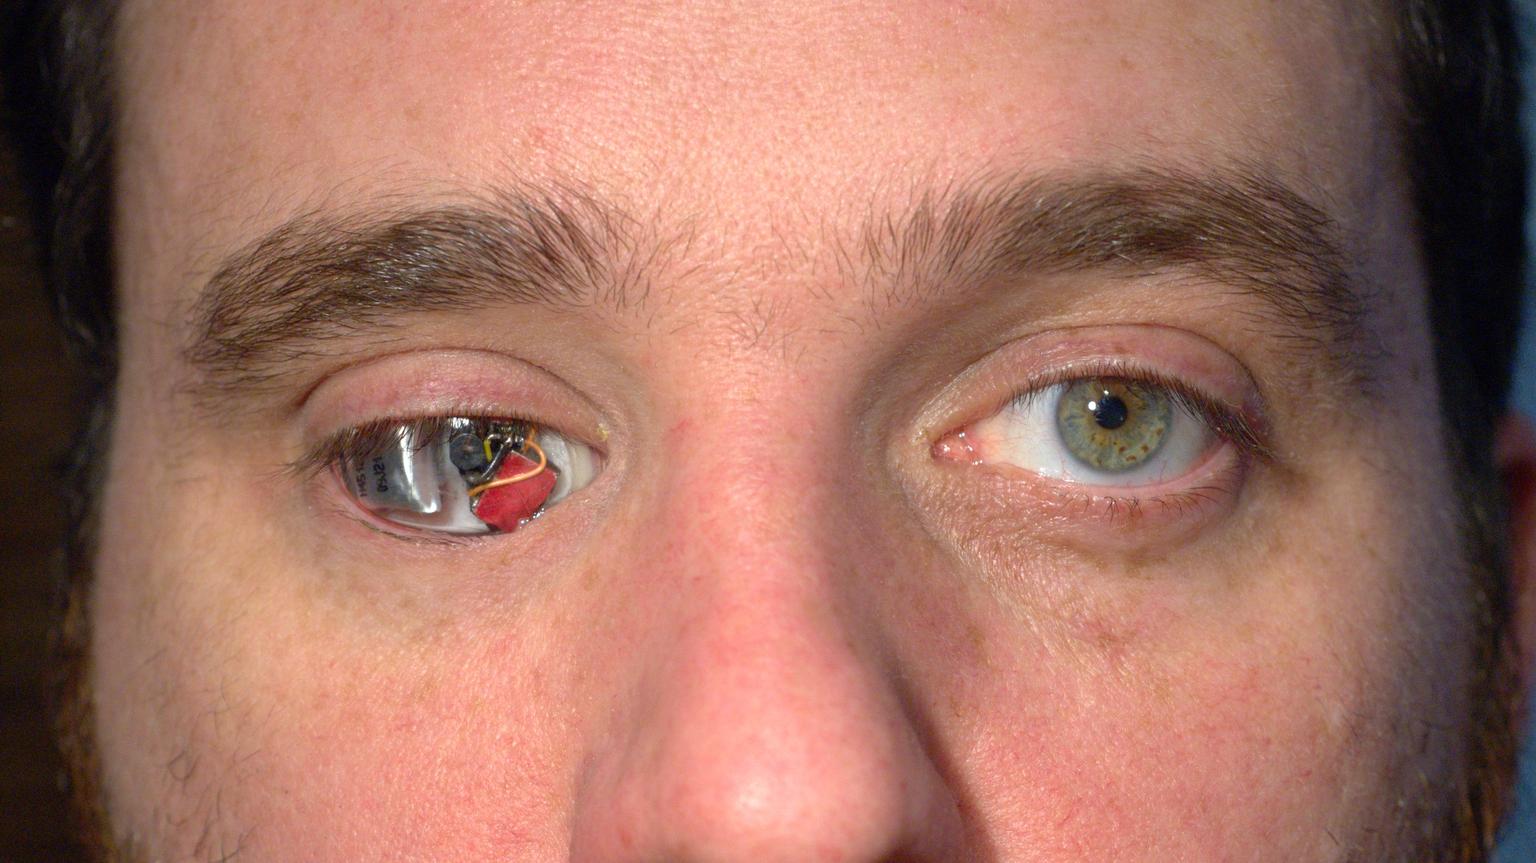 Siliconul din ochi afectează vederea. Apariția hemoragiilor pe cornee